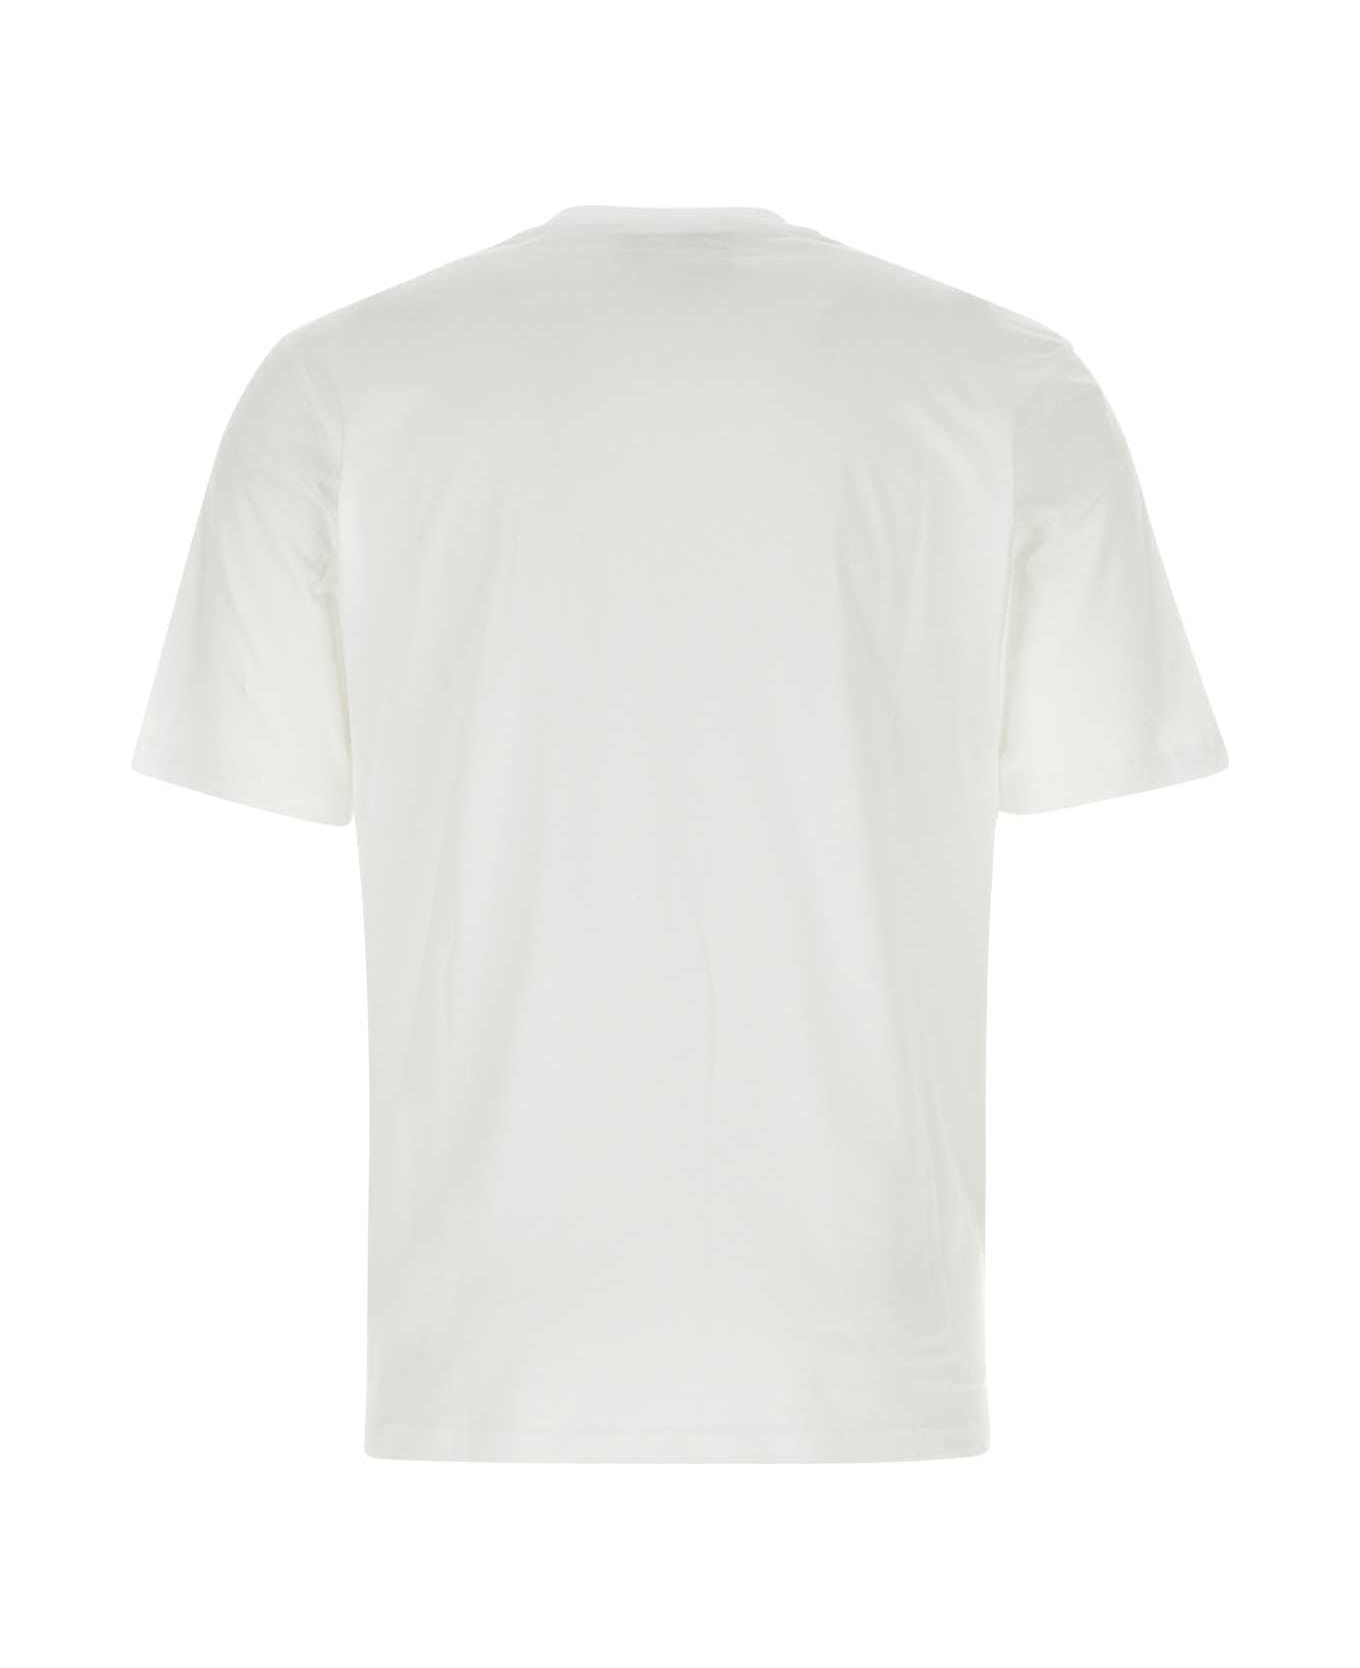 Moschino White Cotton Moschino X Smileyâ® T-shirt - 1001